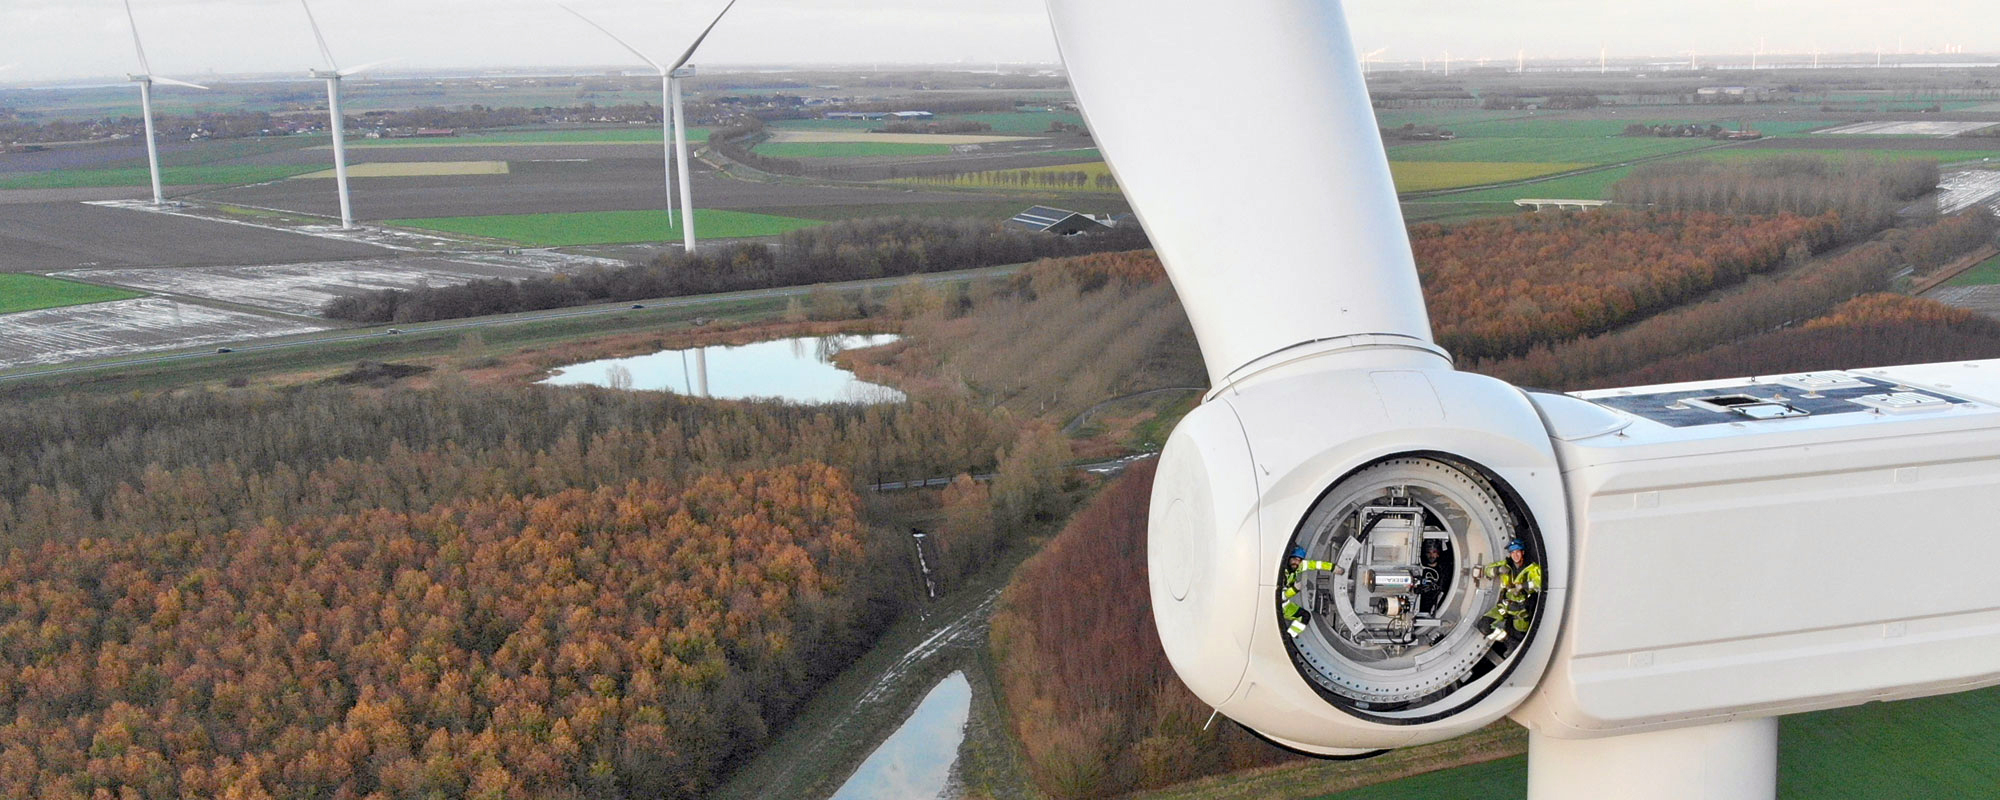 La lubrification automatique contribue à la croissance de l’énergie éolienne